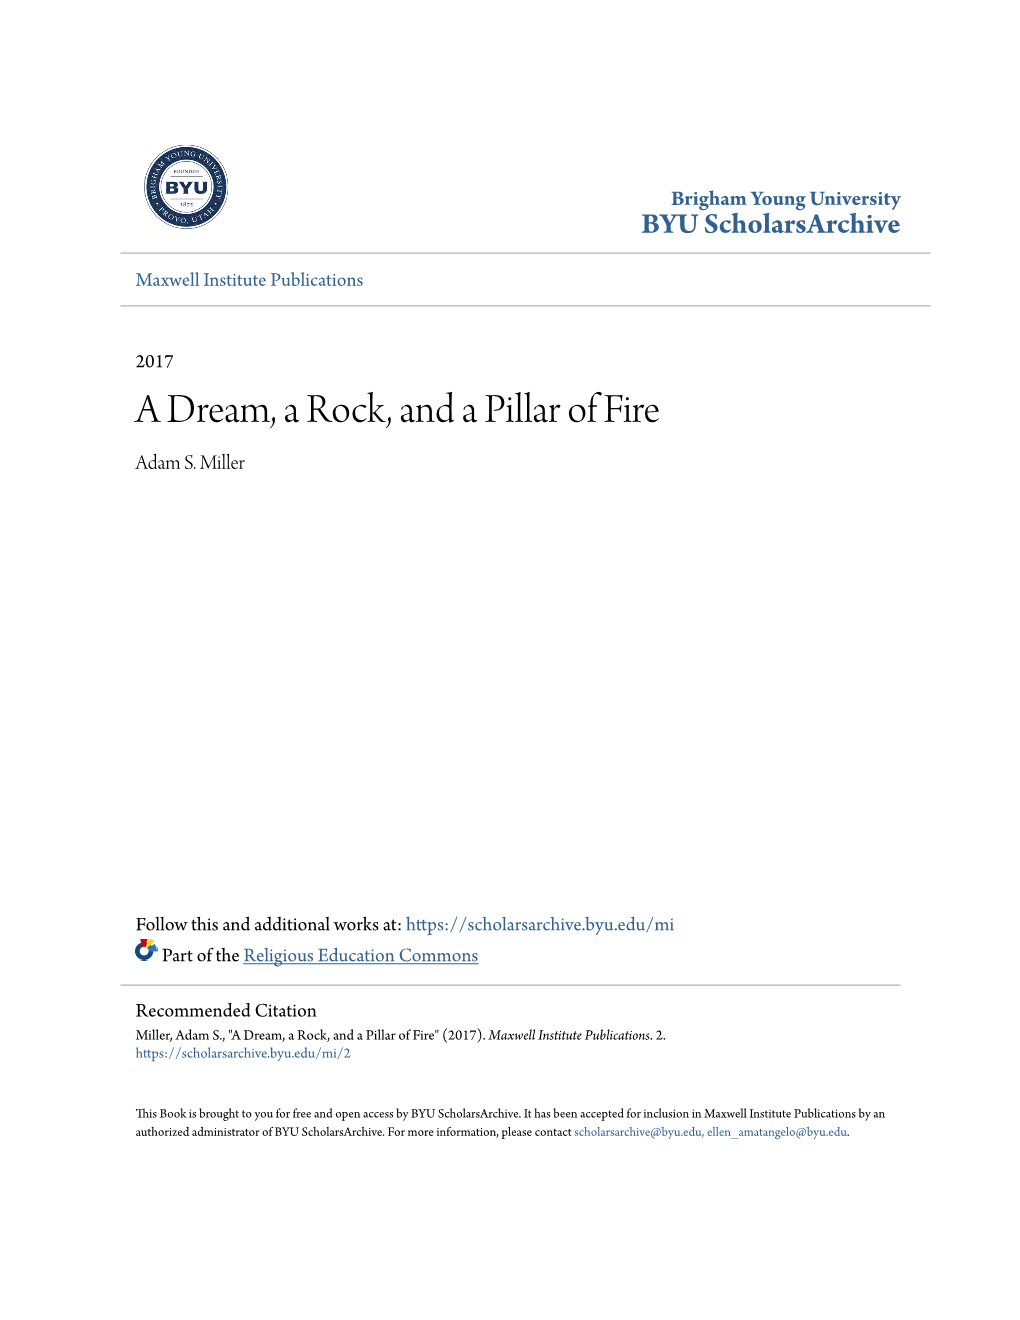 A Dream, a Rock, and a Pillar of Fire Adam S